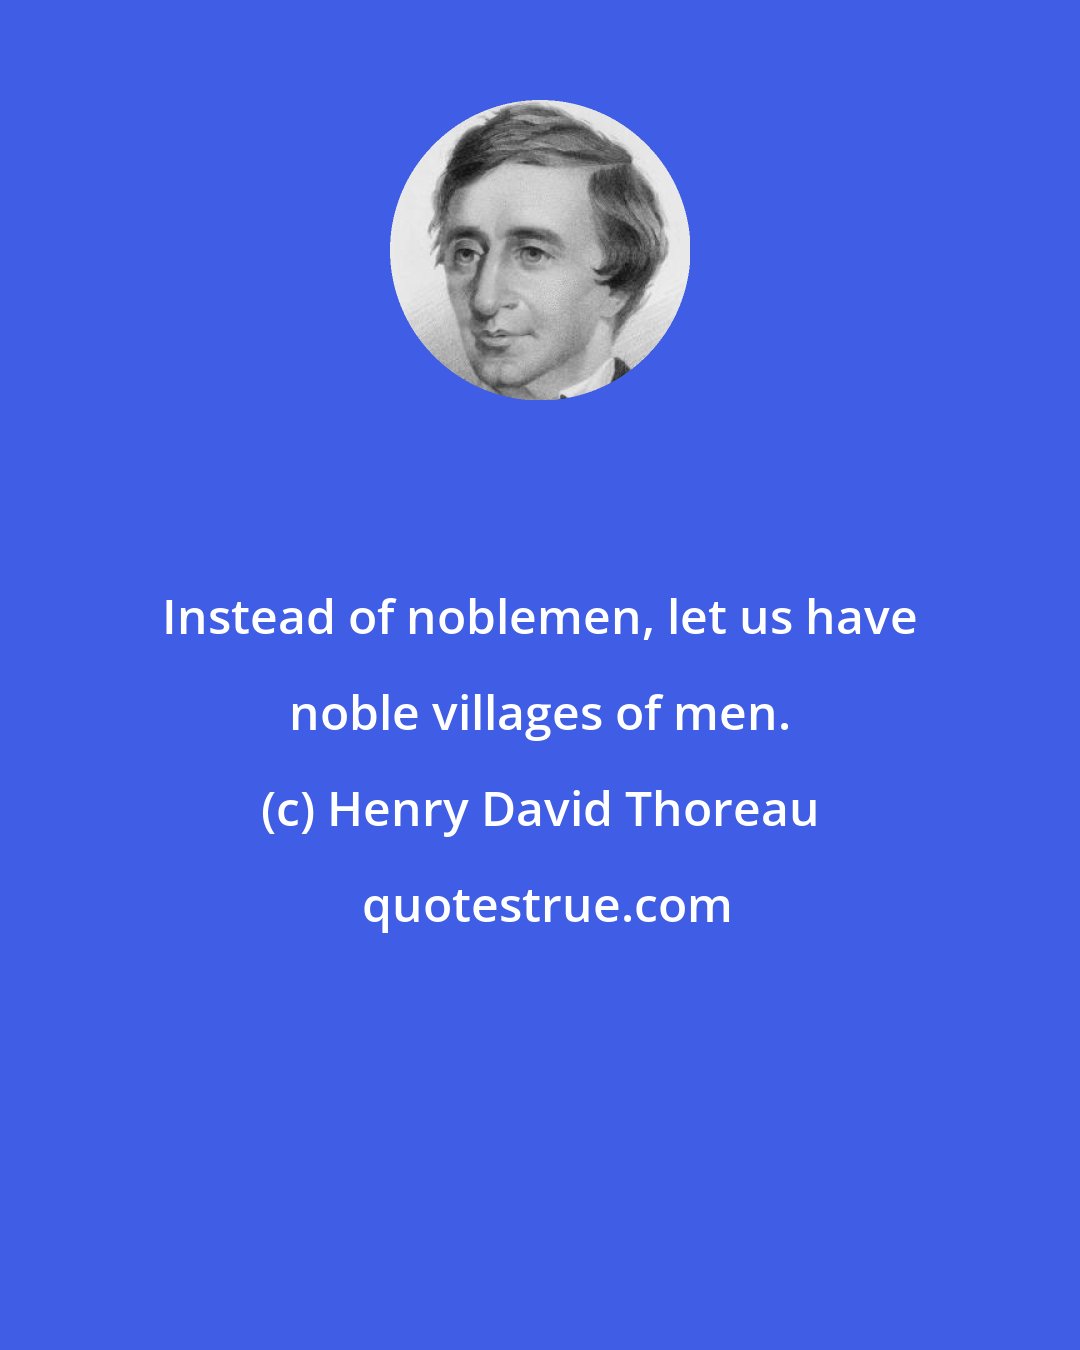 Henry David Thoreau: Instead of noblemen, let us have noble villages of men.